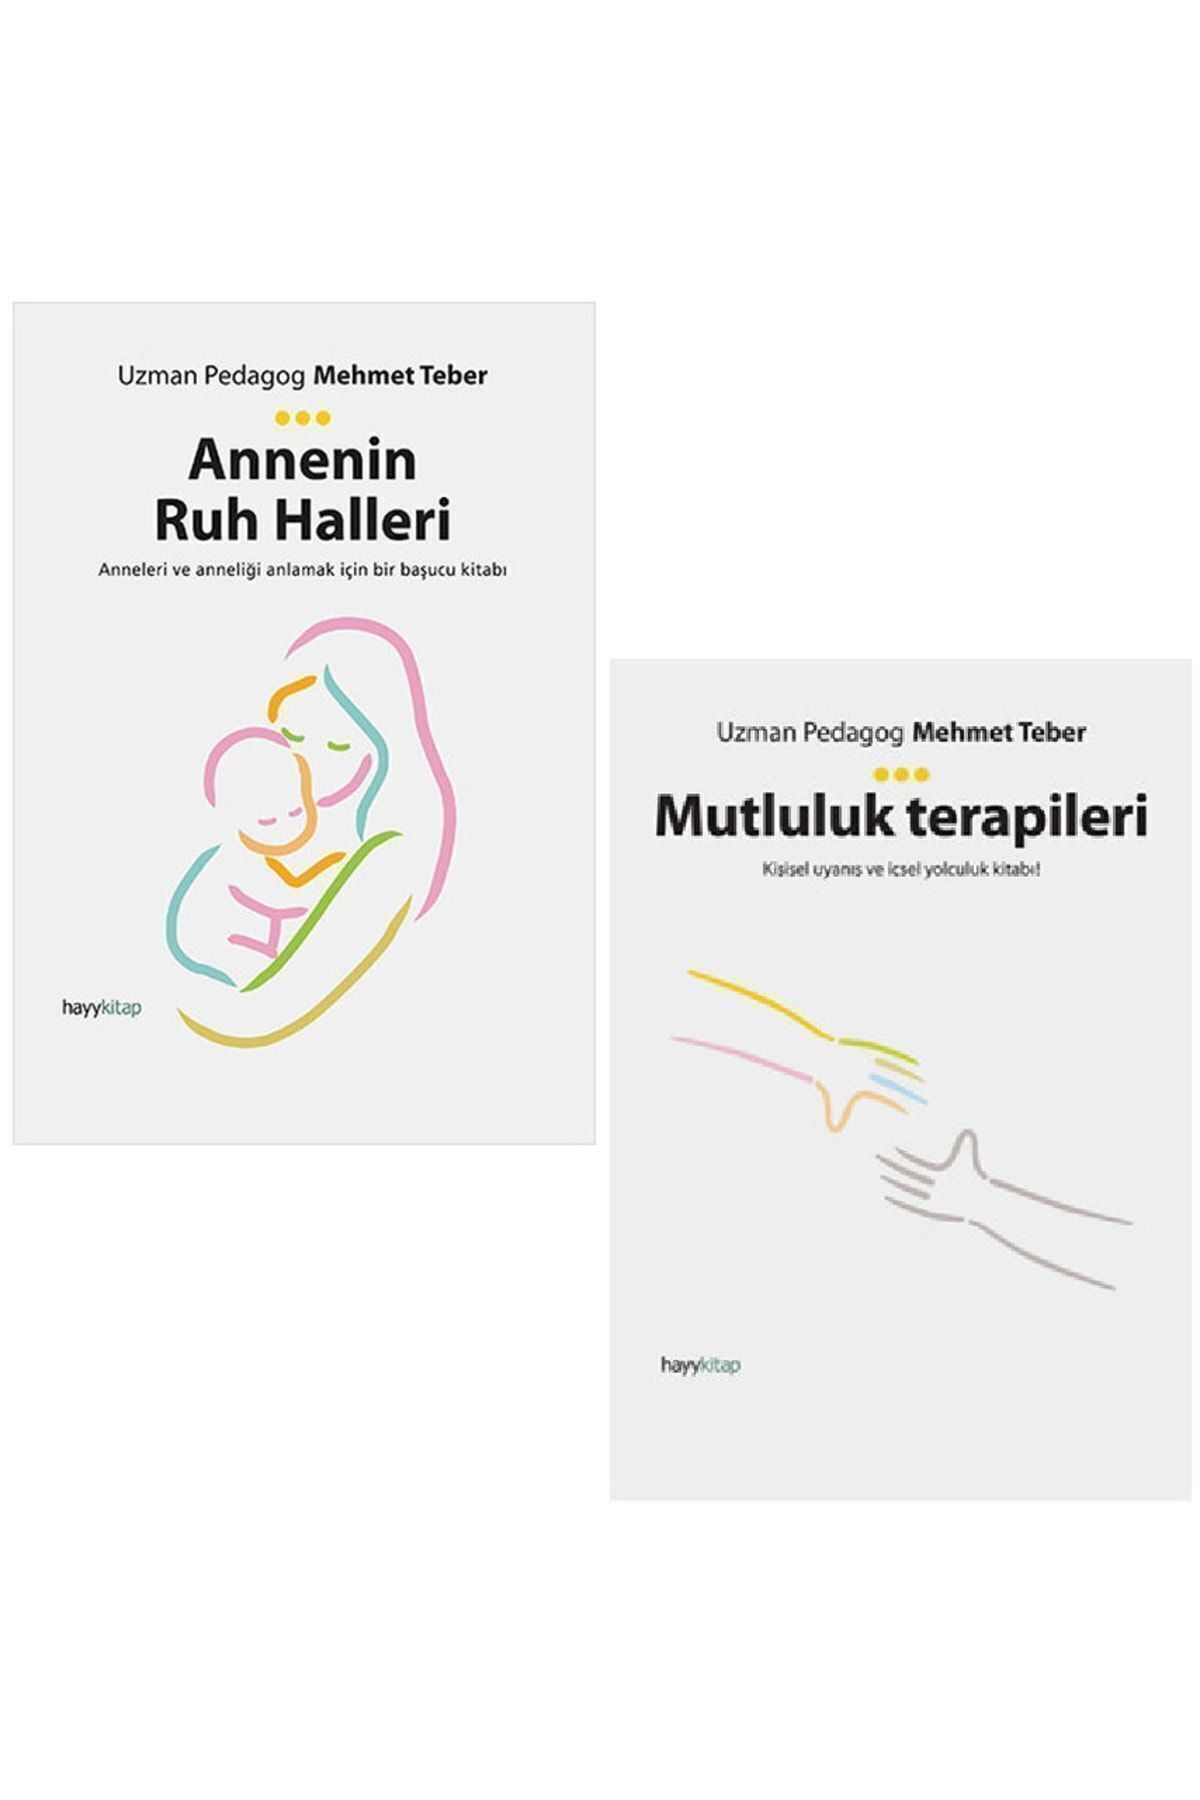 Hayykitap Uzman Pedagog Mehmet Teber 2 Kitap Set / Annenin Ruh Halleri - Mutluluk Terapileri